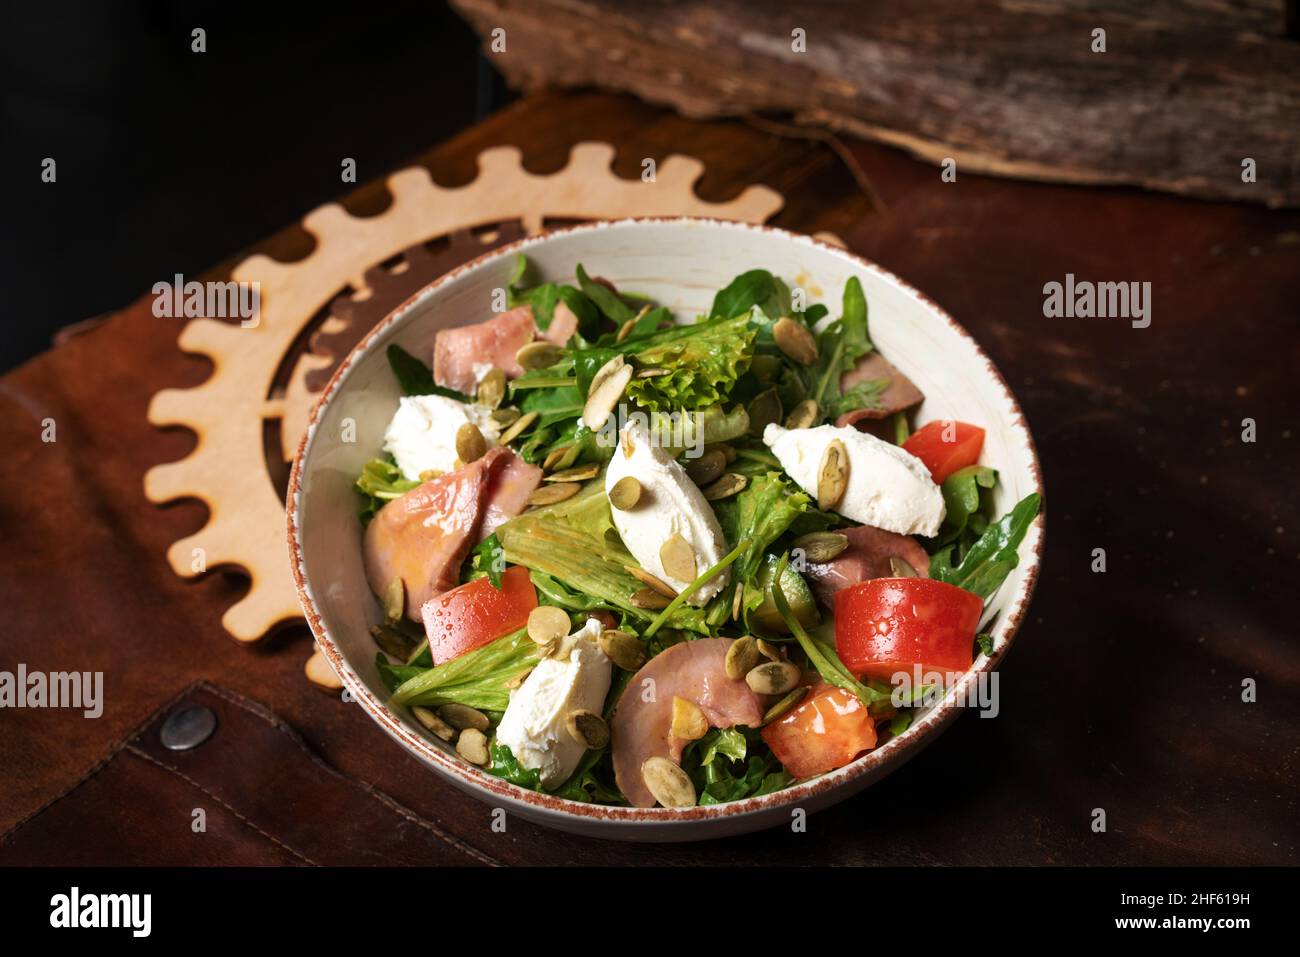 Salade de légumes frais avec légumes, poisson, fromage, œuf, graines de citrouille,Arugula en céramique blanche sur un tablier en cuir.Vue de dessus.Photo de haute qualité Banque D'Images